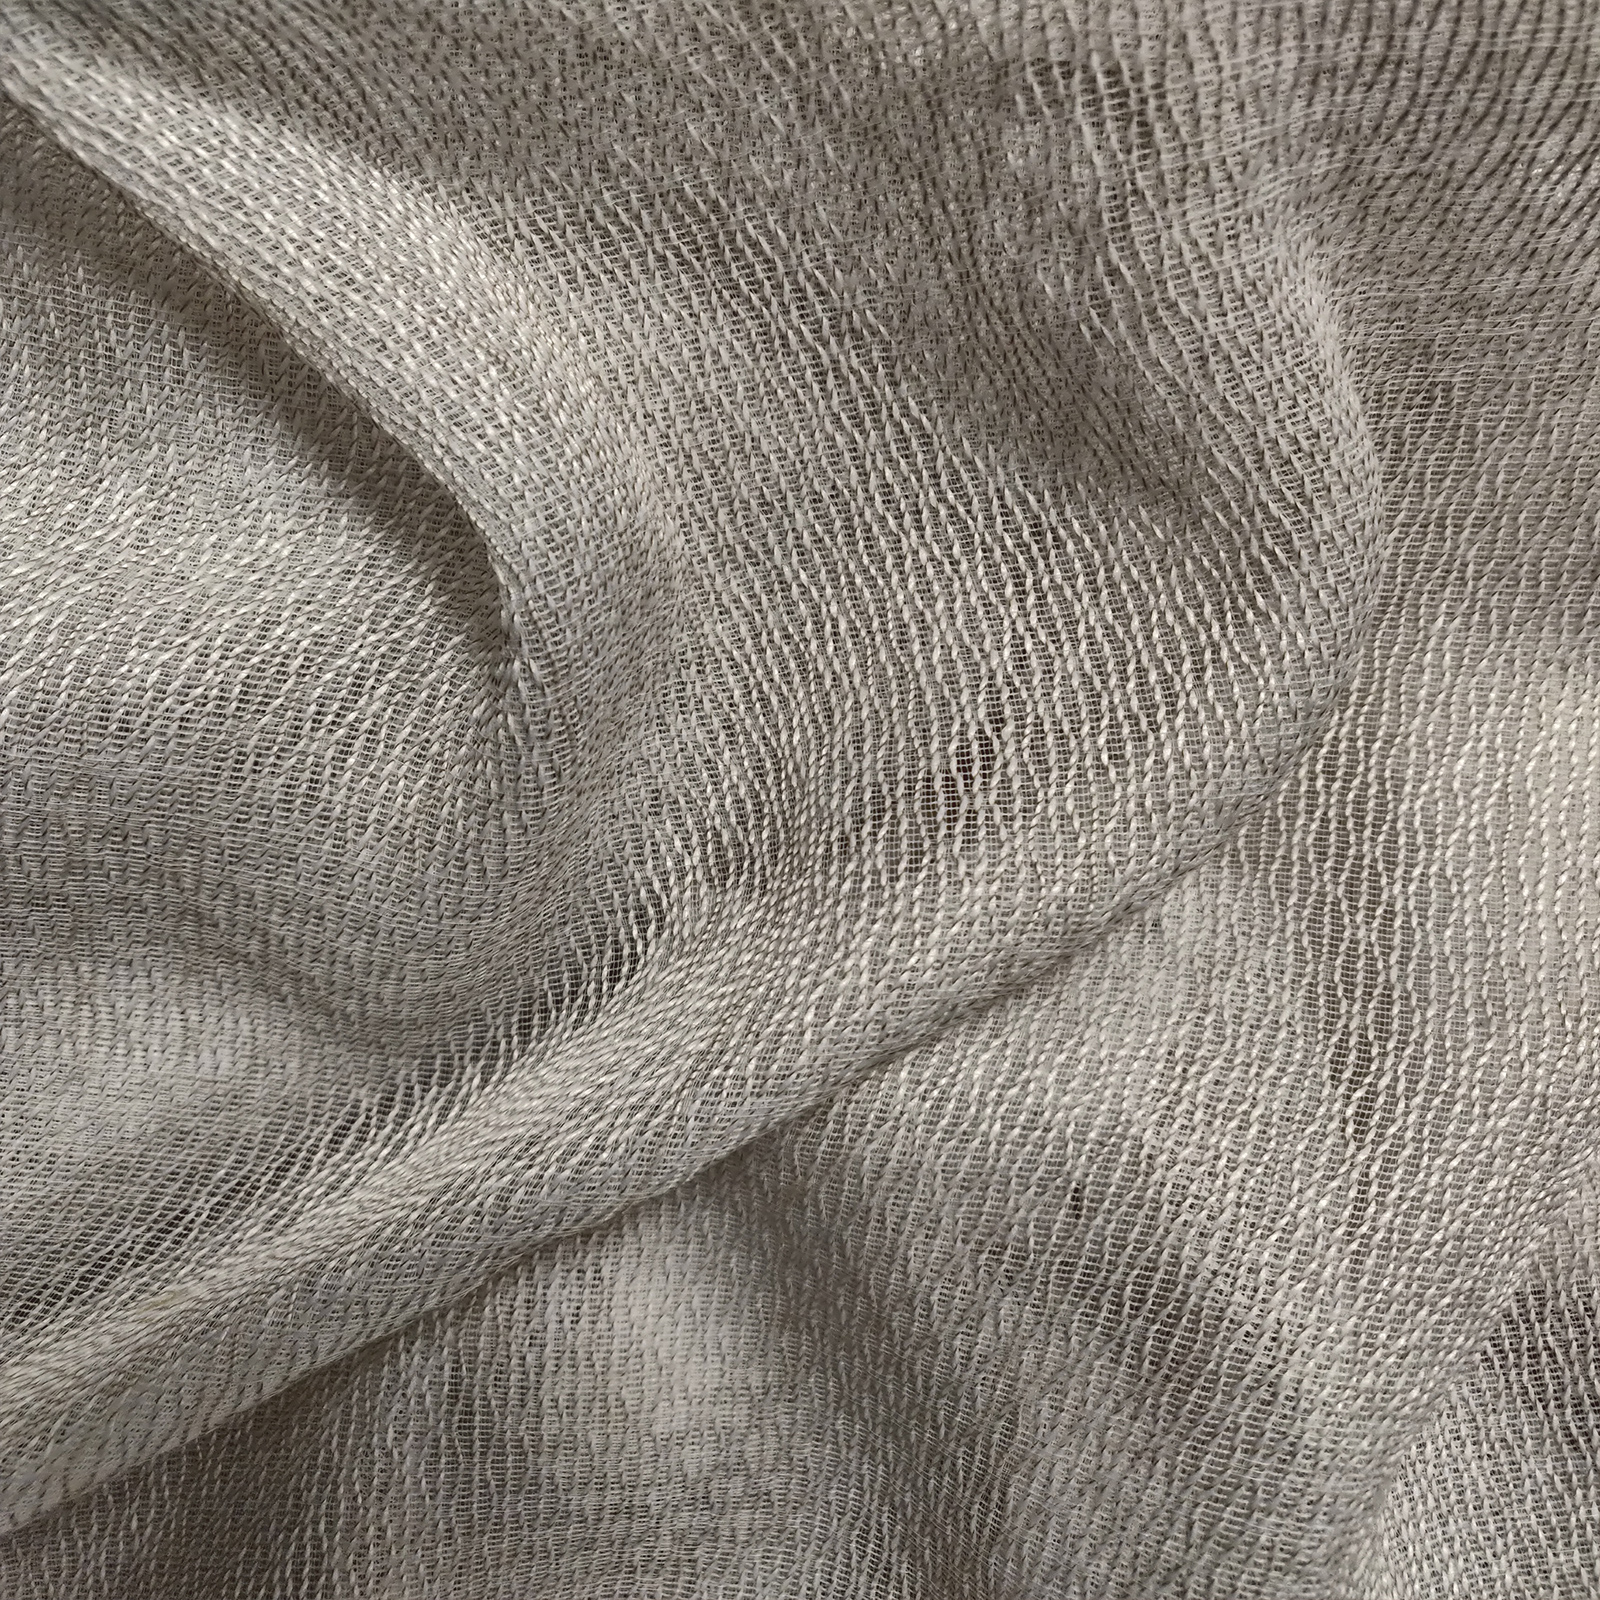 Tessuto semitrasparente per tendaggi. Forniture per arredamento, editoria tessile, GDO, grossisti, dettaglio e moda